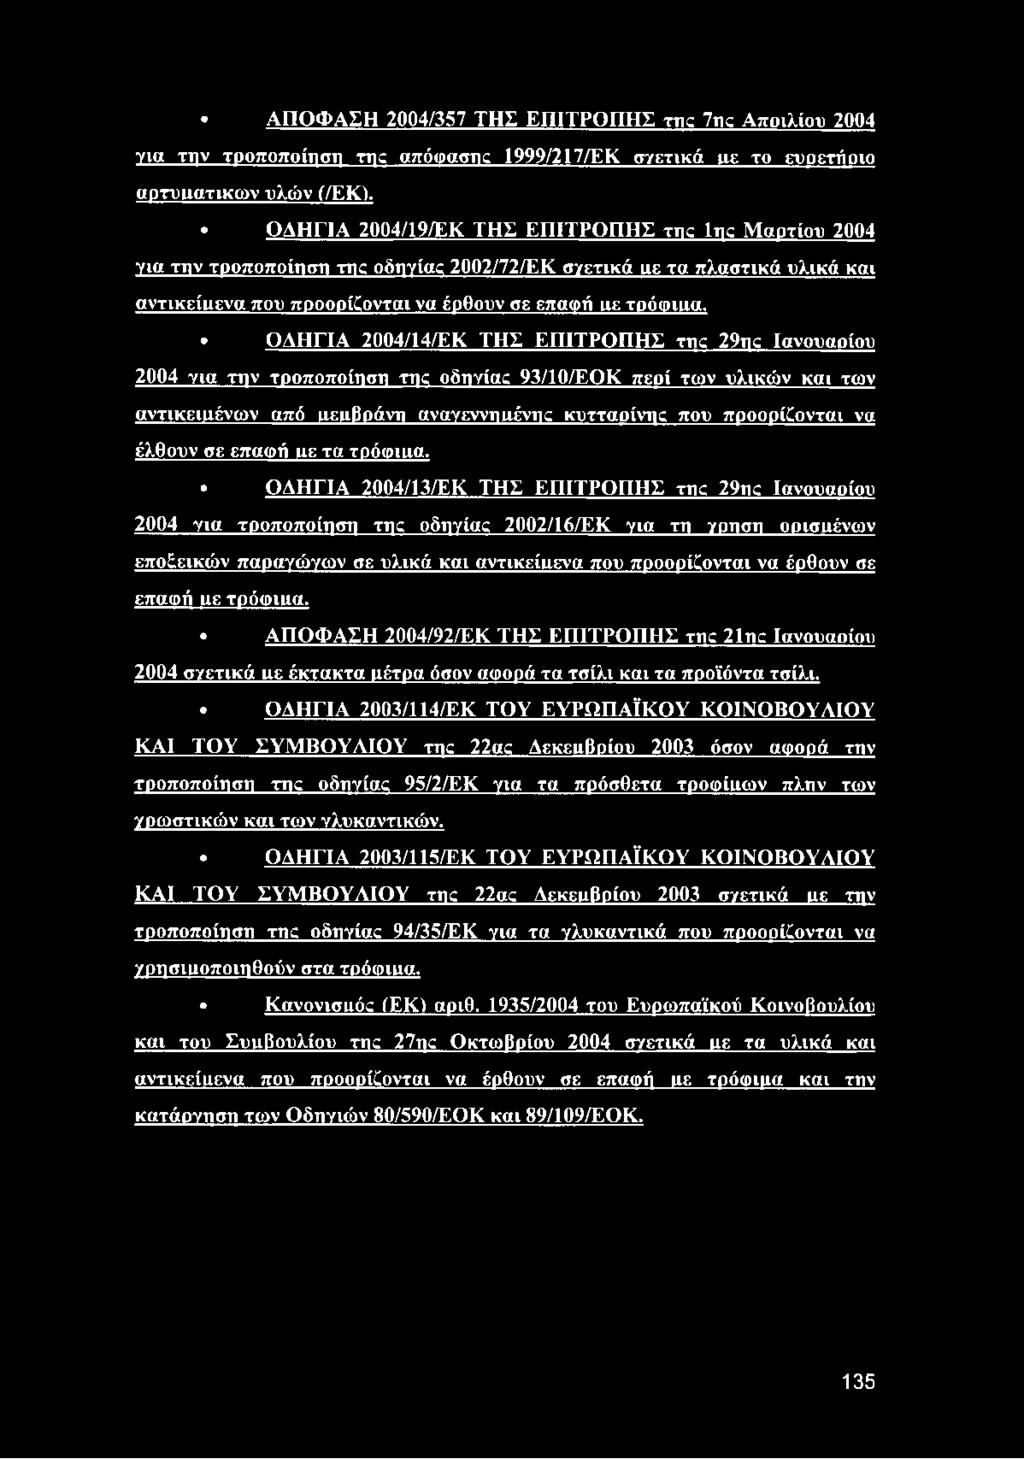 ΟΔΗΓΙΑ 2004/14/ΕΚ ΤΗΣ ΕΠΙΤΡΟΠΗΣ της 29ης Ιανουαοίου 2004 για την τροποποίηση της οδηγίας 93/10/EQK περί των υλικών και των αντικειμένων από ιιειιβράνη αναγεννημένης κυτταρίνη;: που προορίζονται να